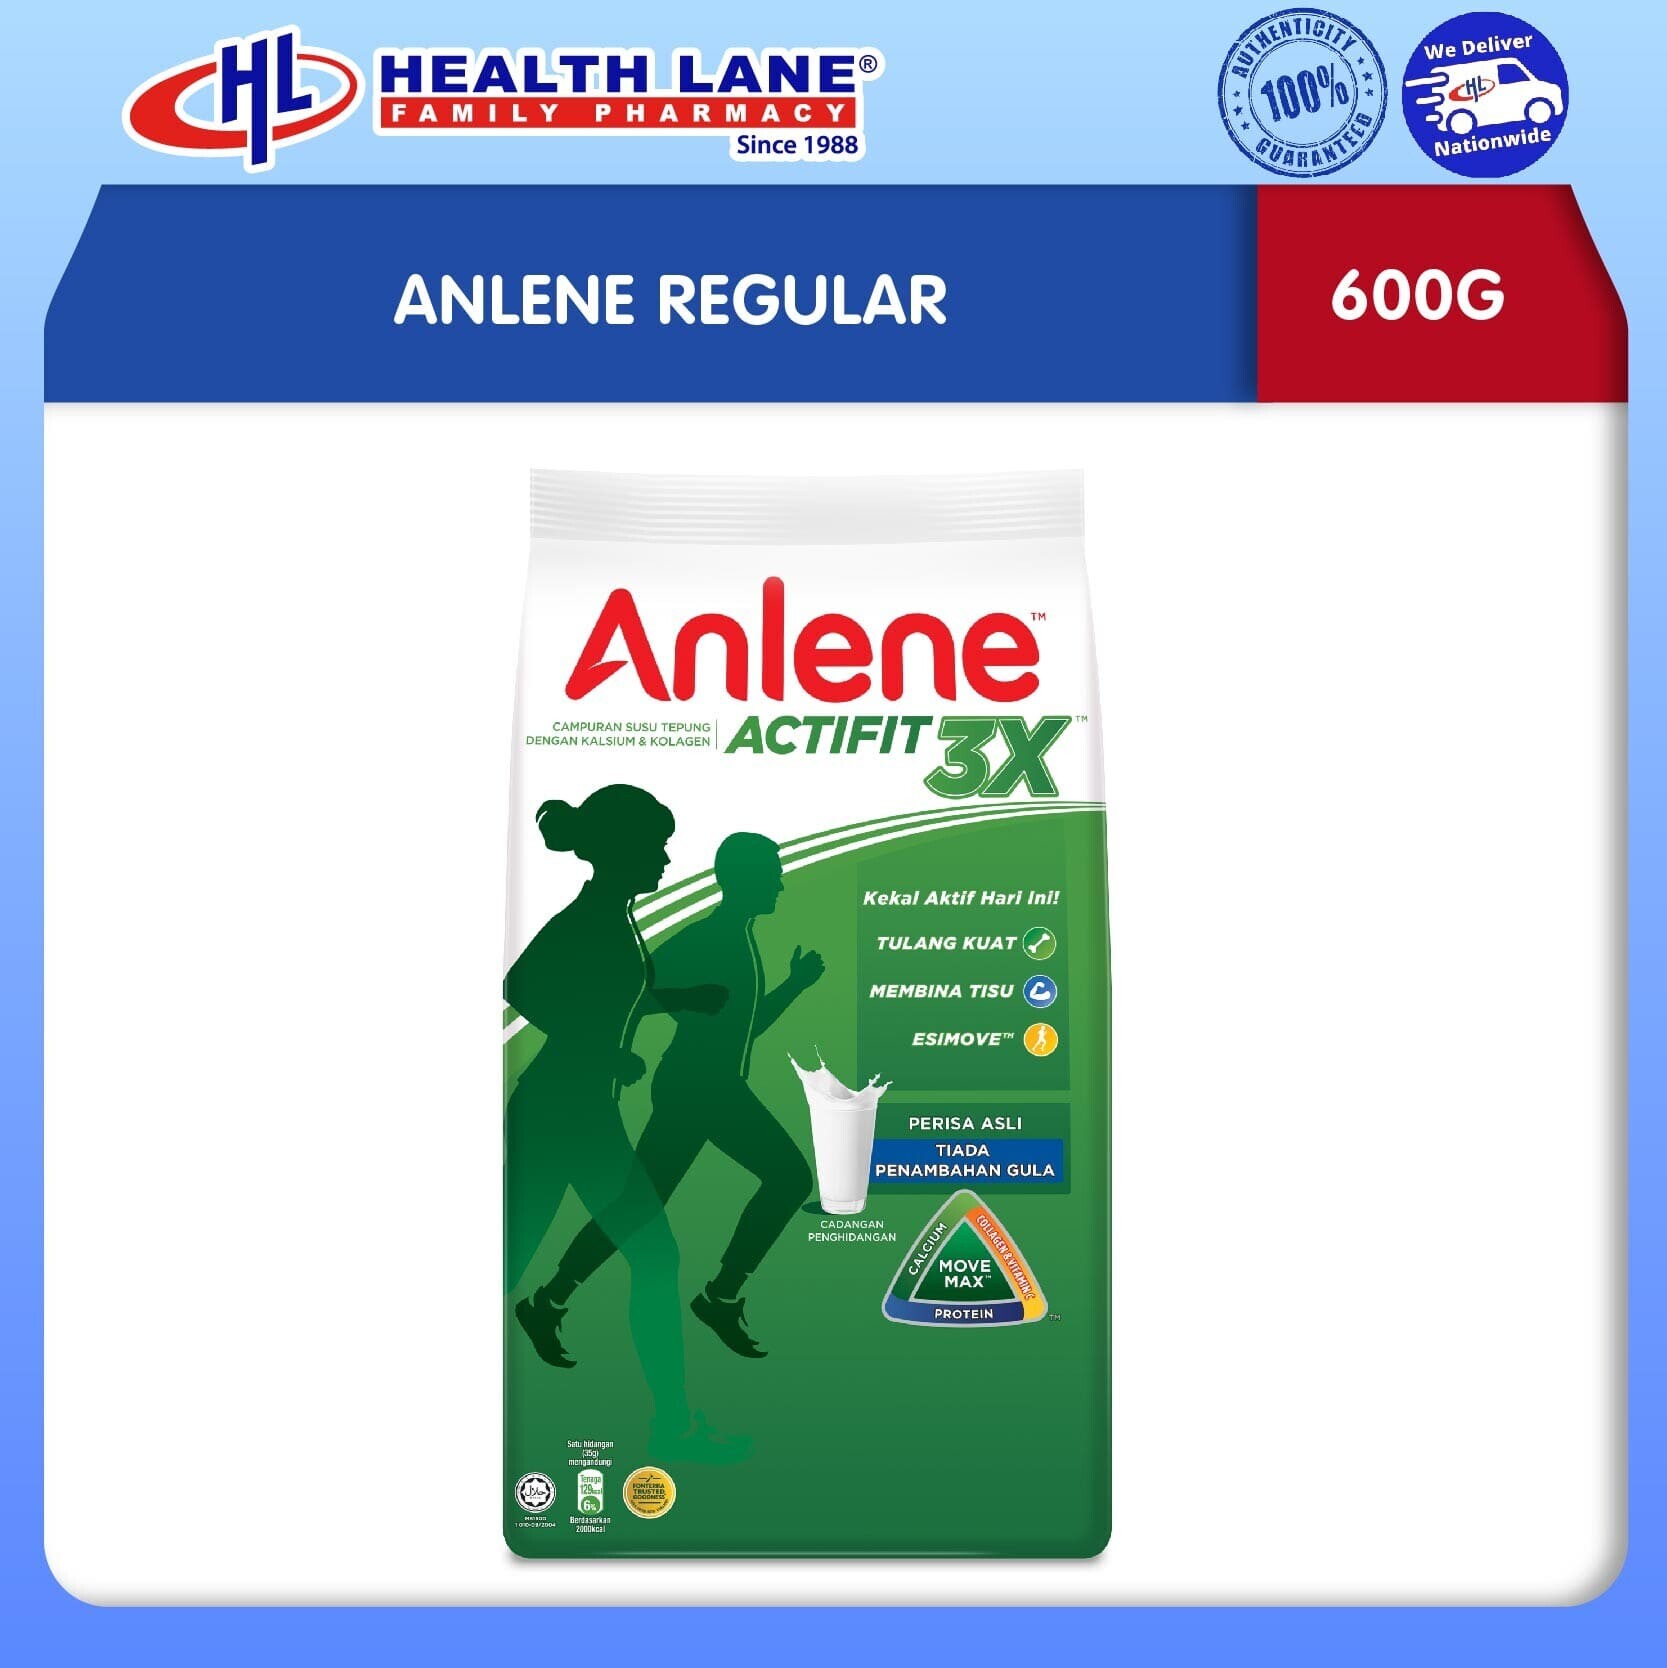 ANLENE REGULAR (600G)